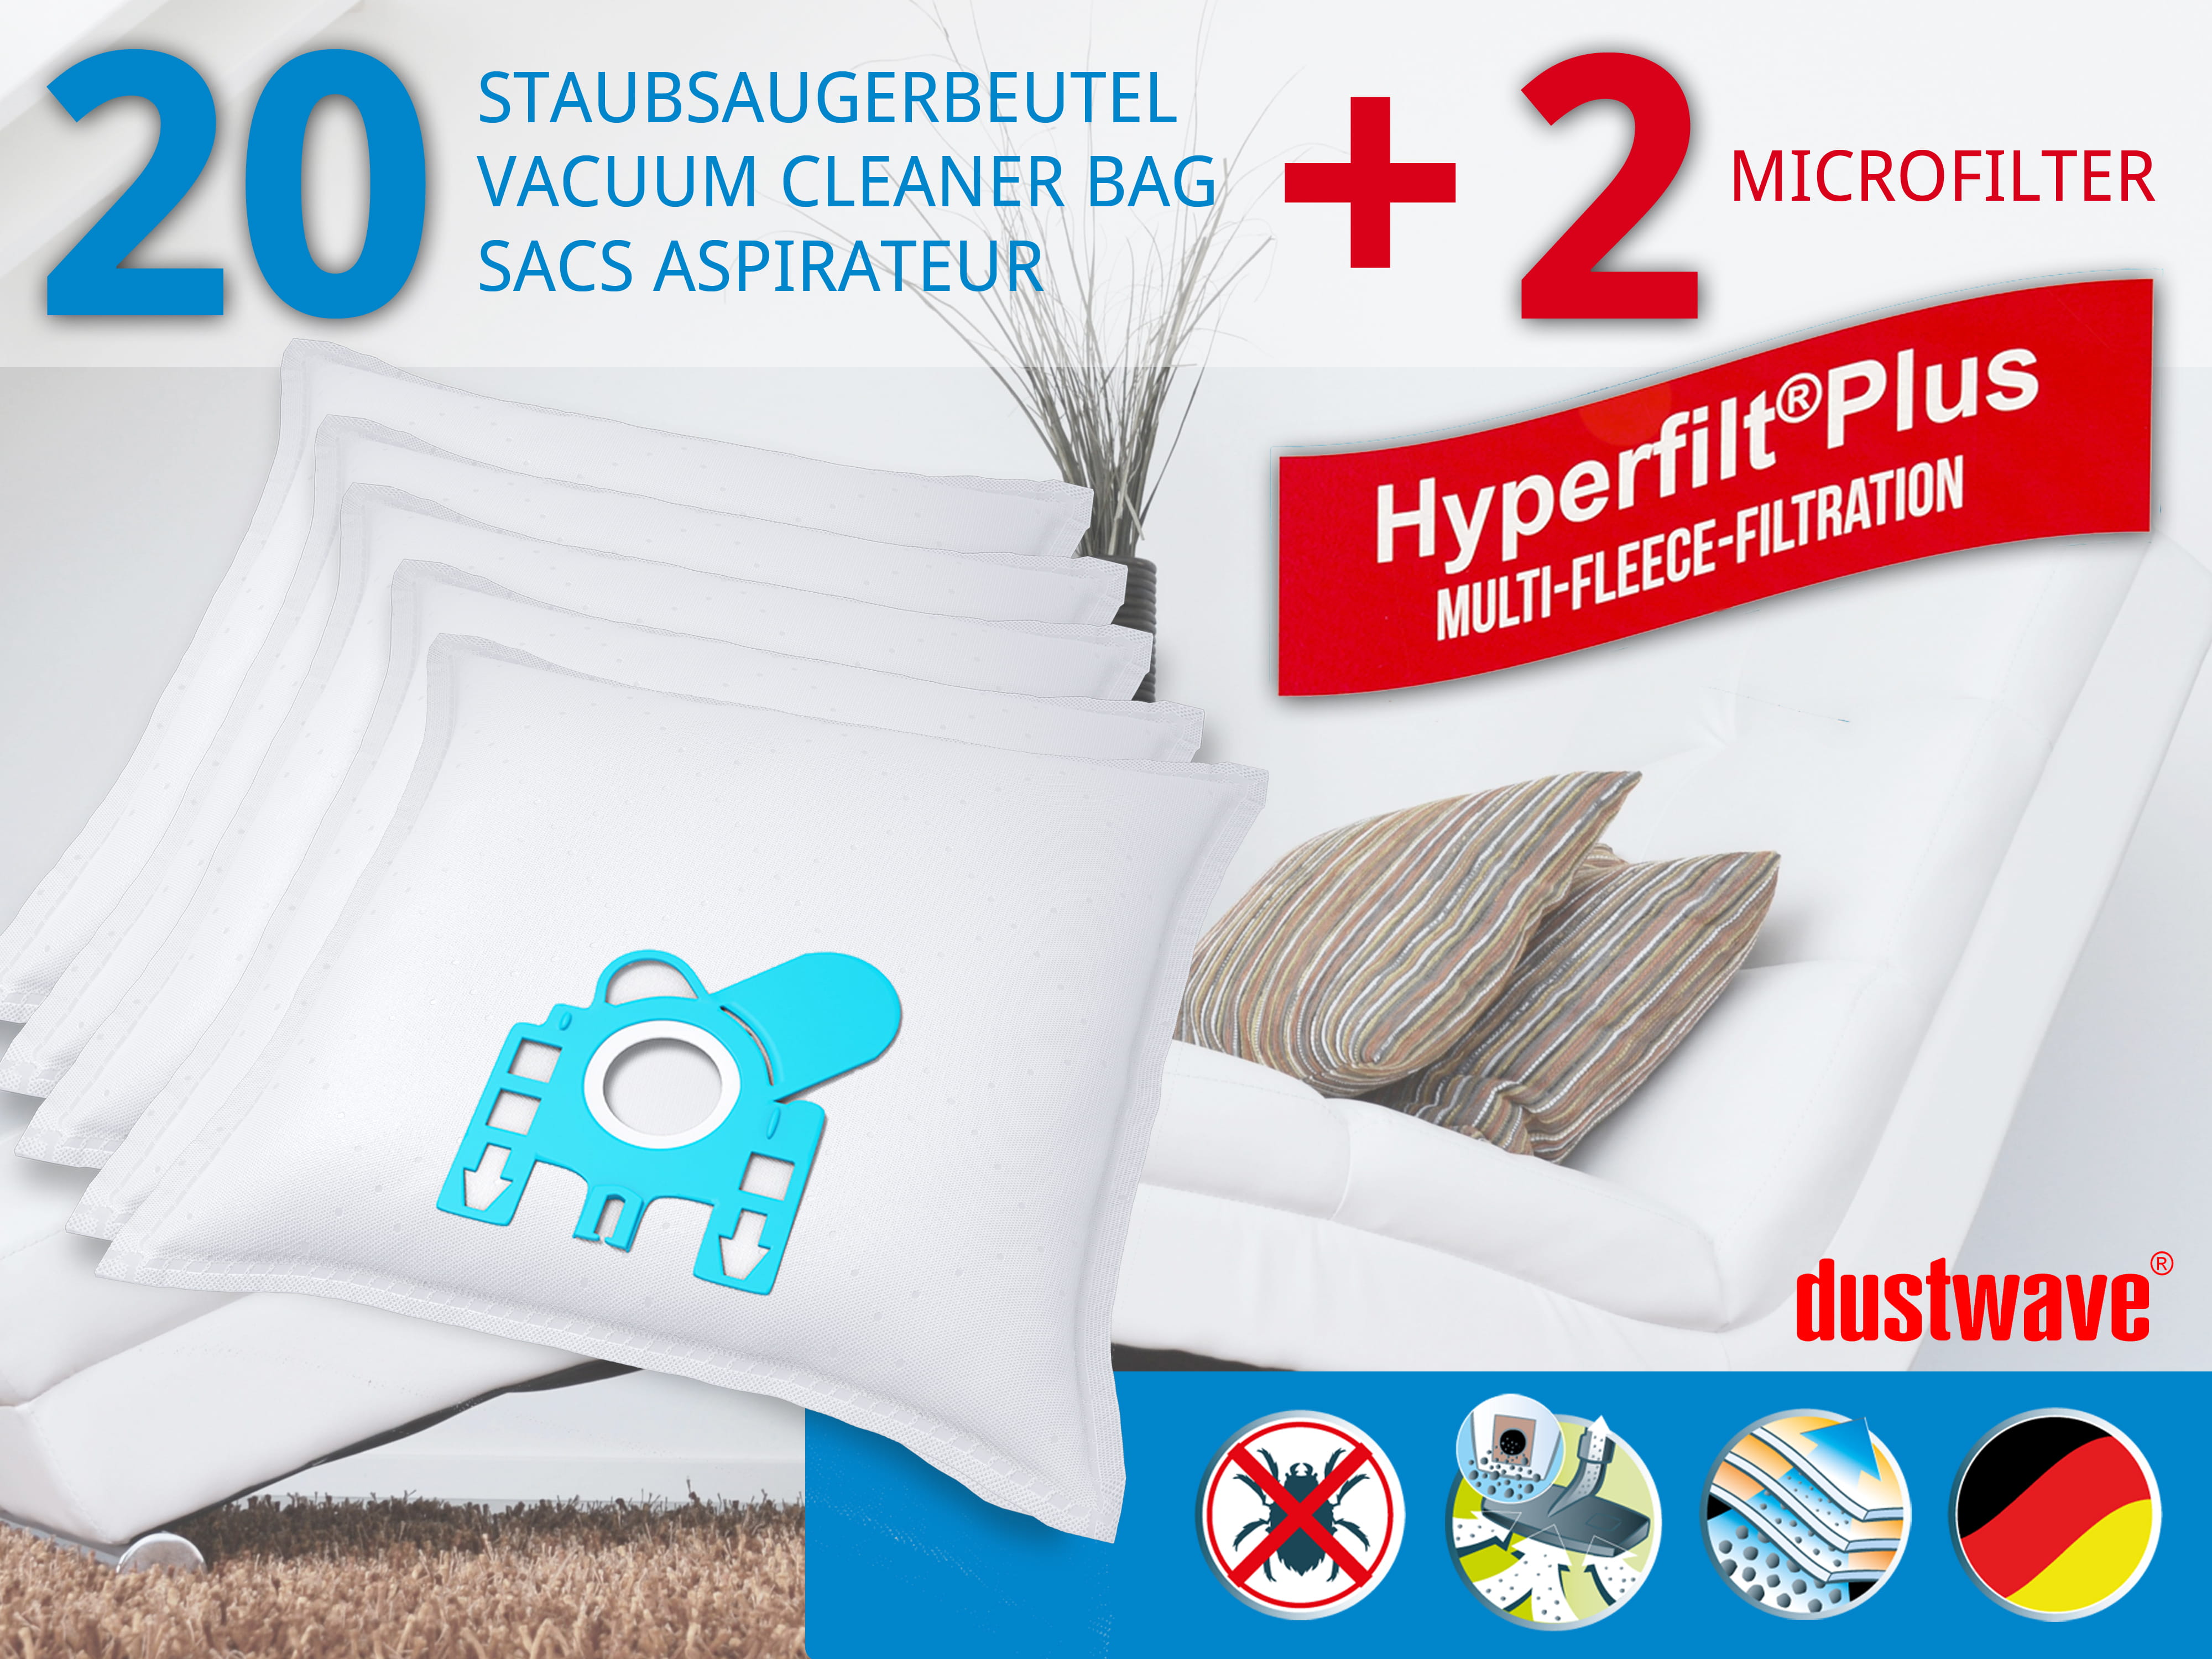 Dustwave® 20 Staubsaugerbeutel für Hoover AR40231 / TRAR40231 - hocheffizient, mehrlagiges Mikrovlies mit Hygieneverschluss - Made in Germany